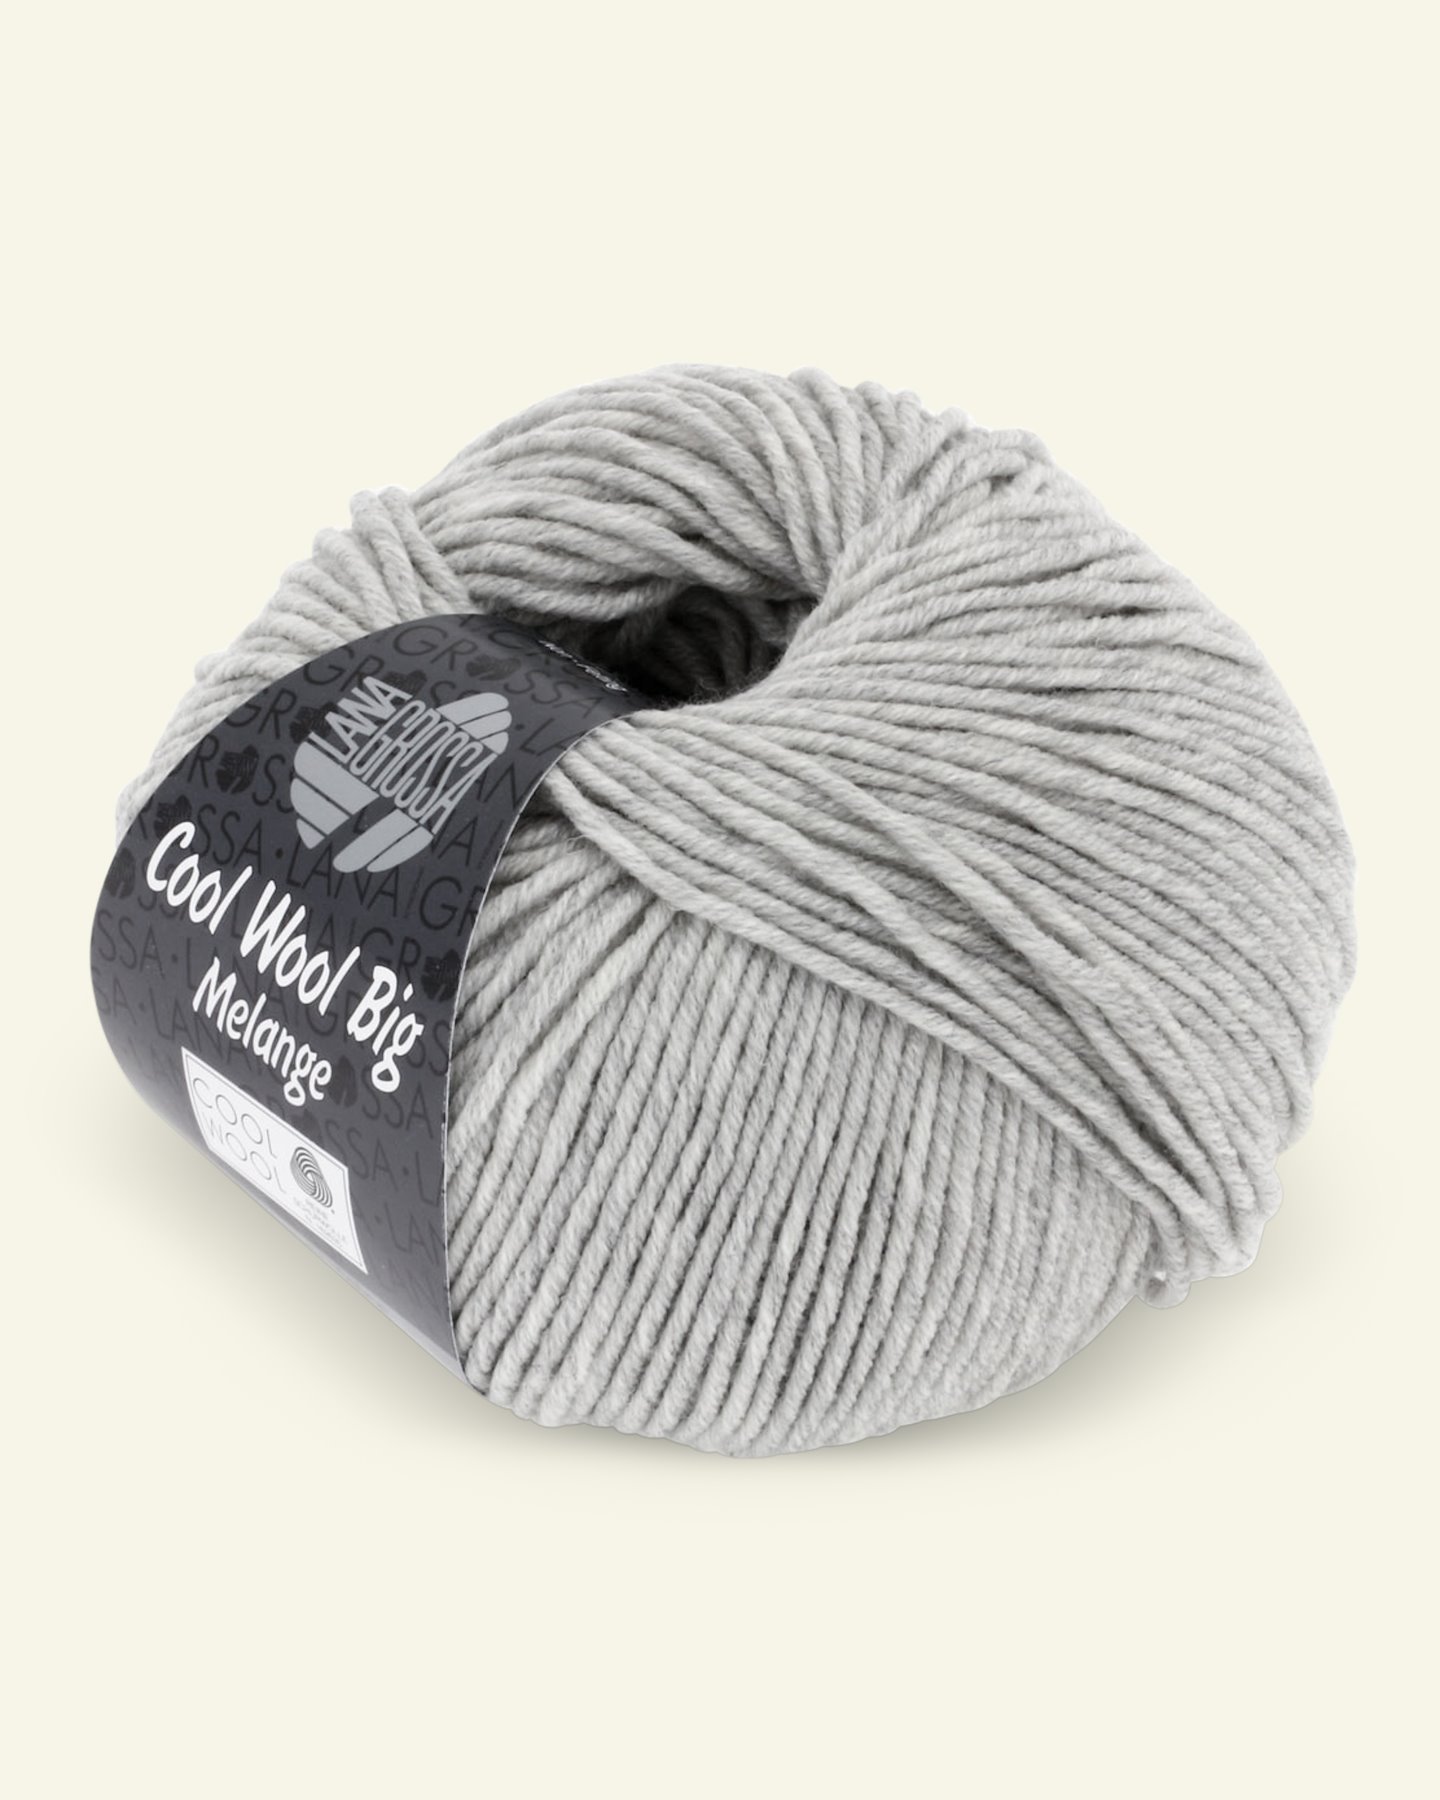 Lana Grossa, extrafine merino ullgarn "Cool Wool Big", ljusgrå mel. 90001085_pack